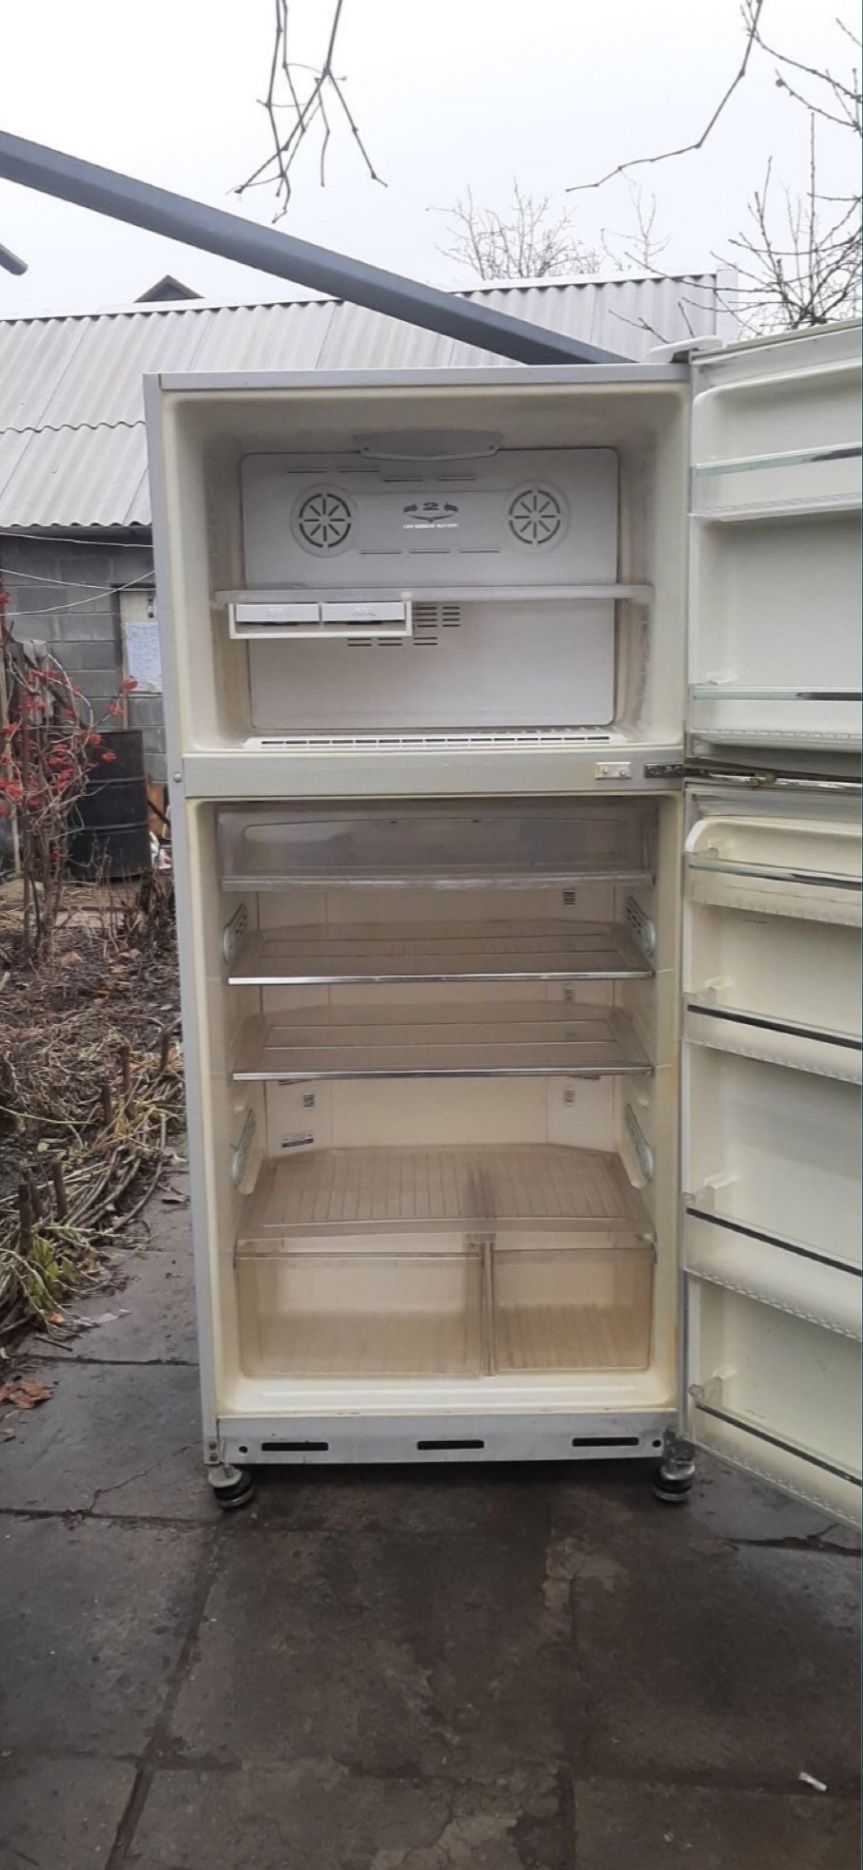 Продам под ремонт очень болшой холодильник SUPER GENERAL с доставкой.